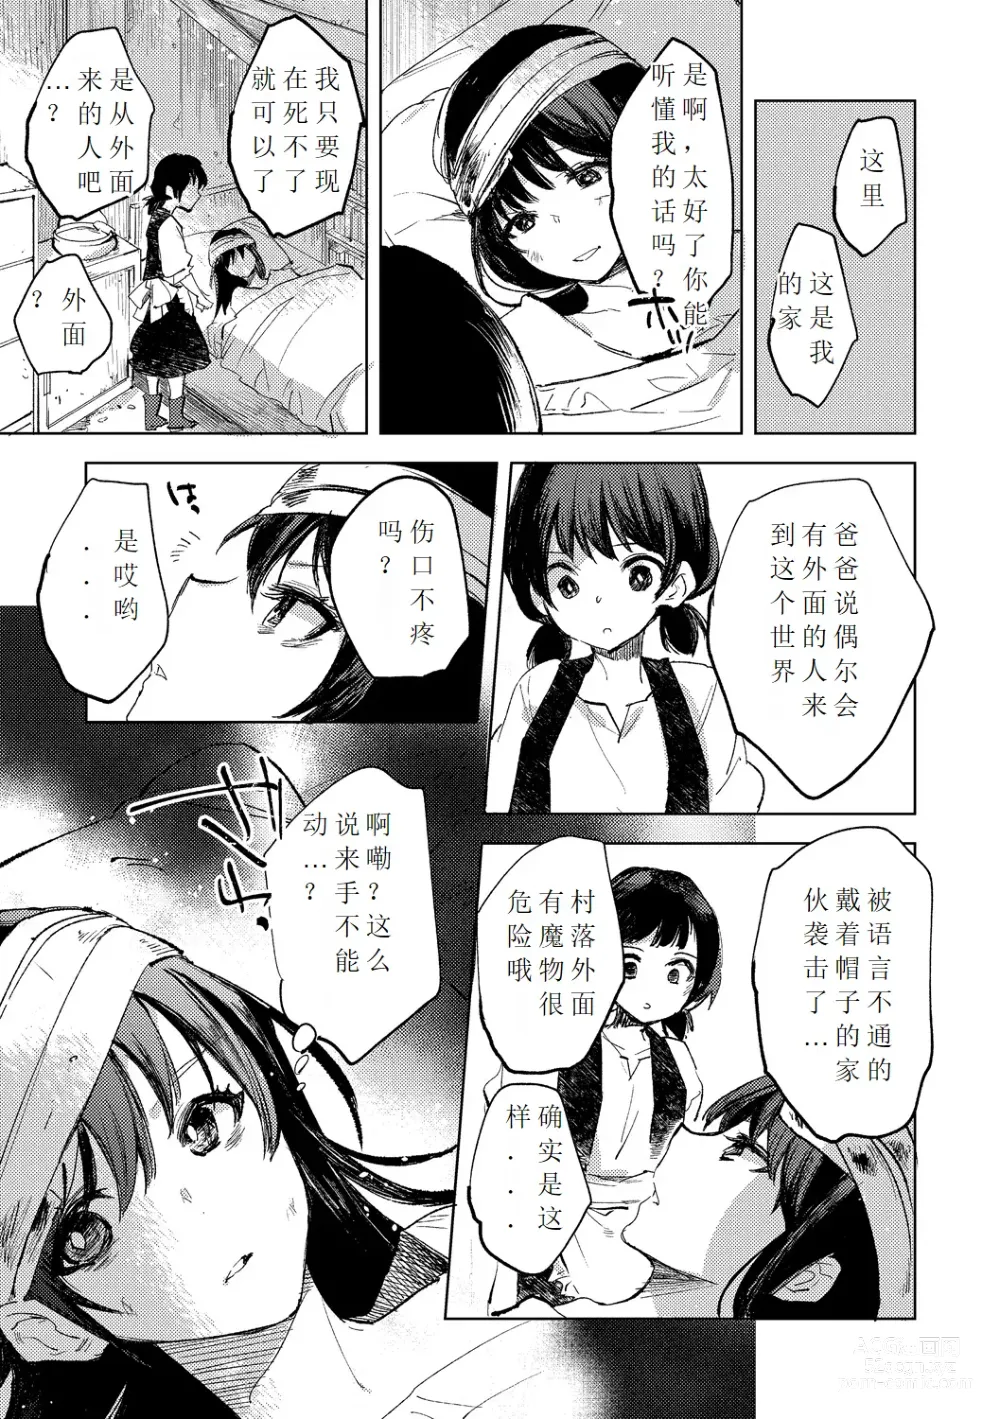 Page 7 of manga Tensei shitara Daruma Joshi ni Sareta Usotsuki Bitch.